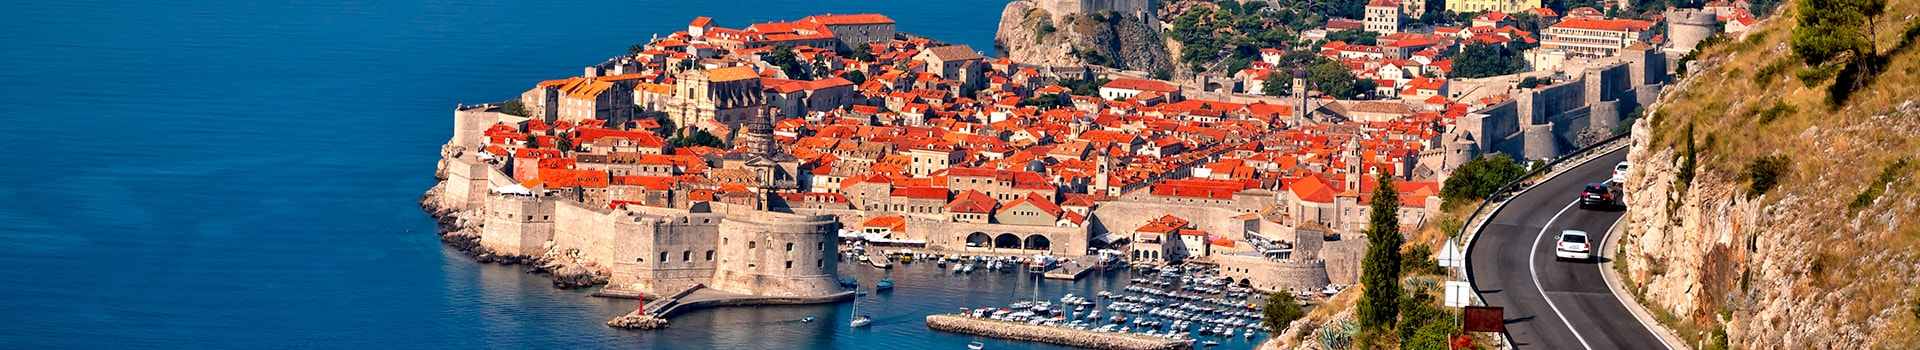 Lyon - Dubrovnik